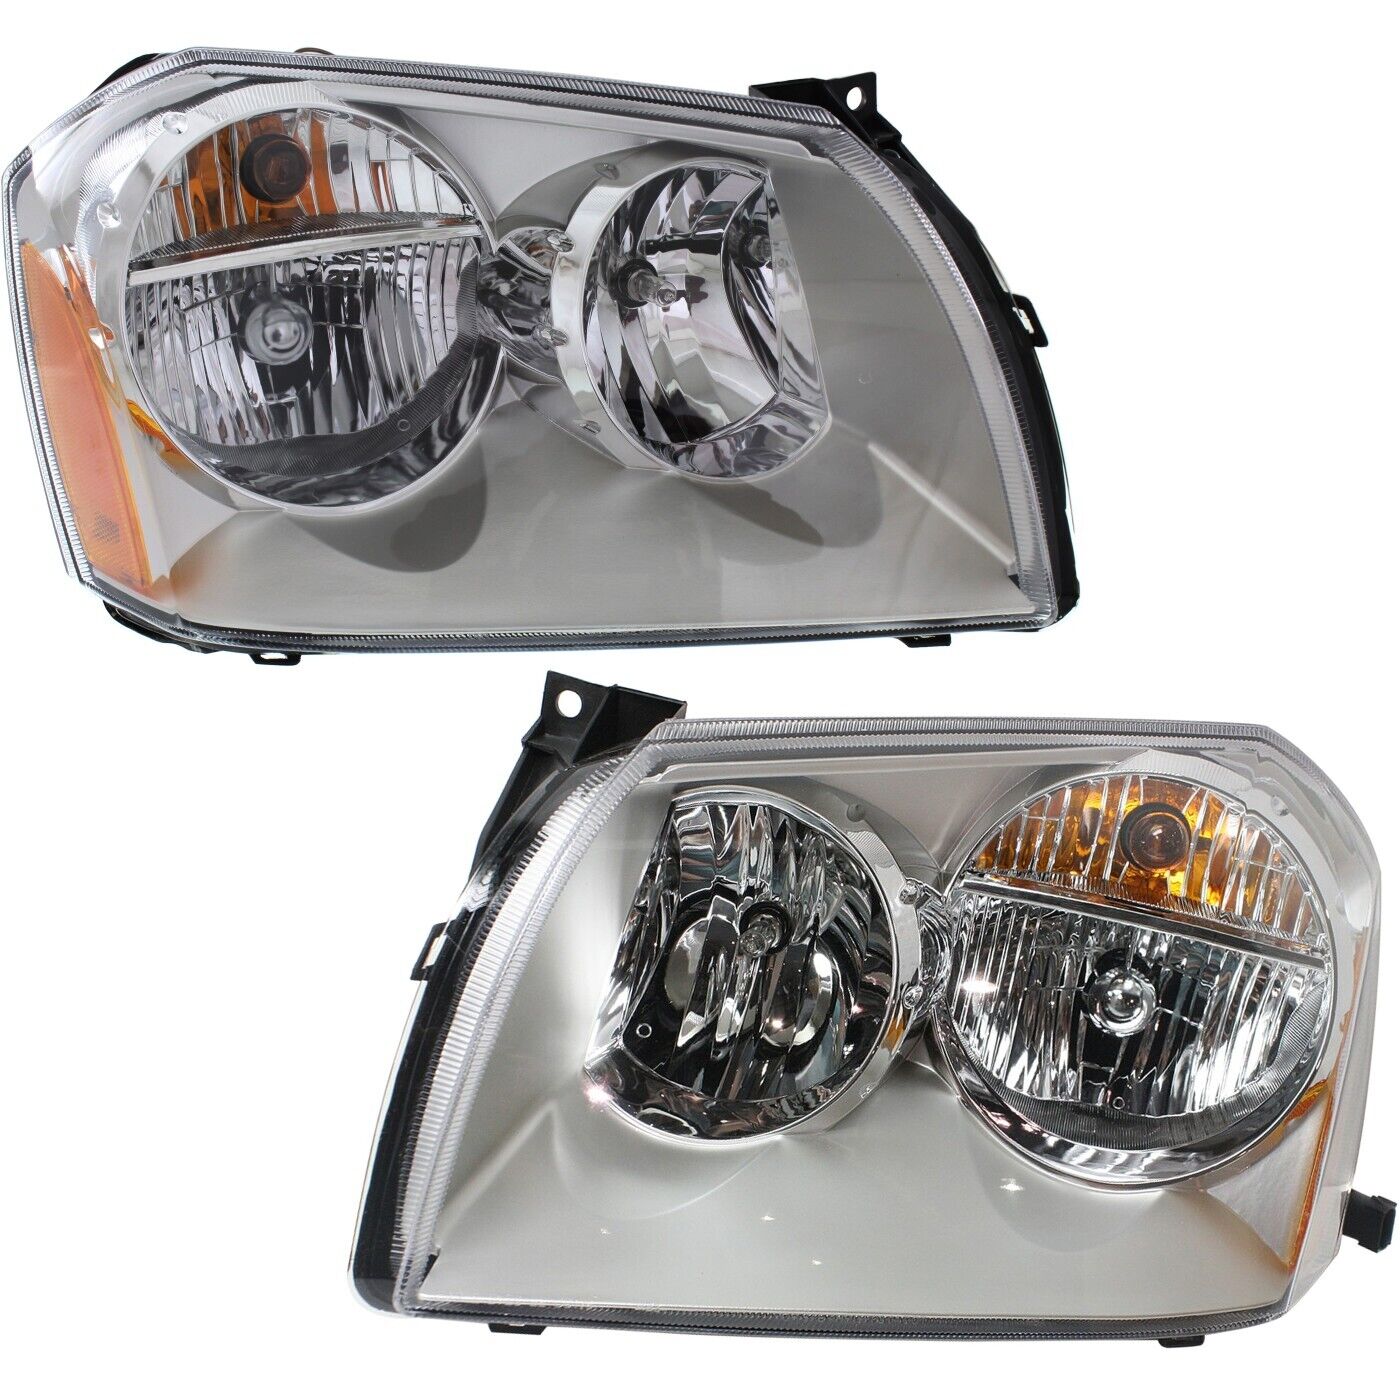 Headlight Set For 2005 2006 2007 Dodge Magnum Headlamp Pair Chrome With Bulbs